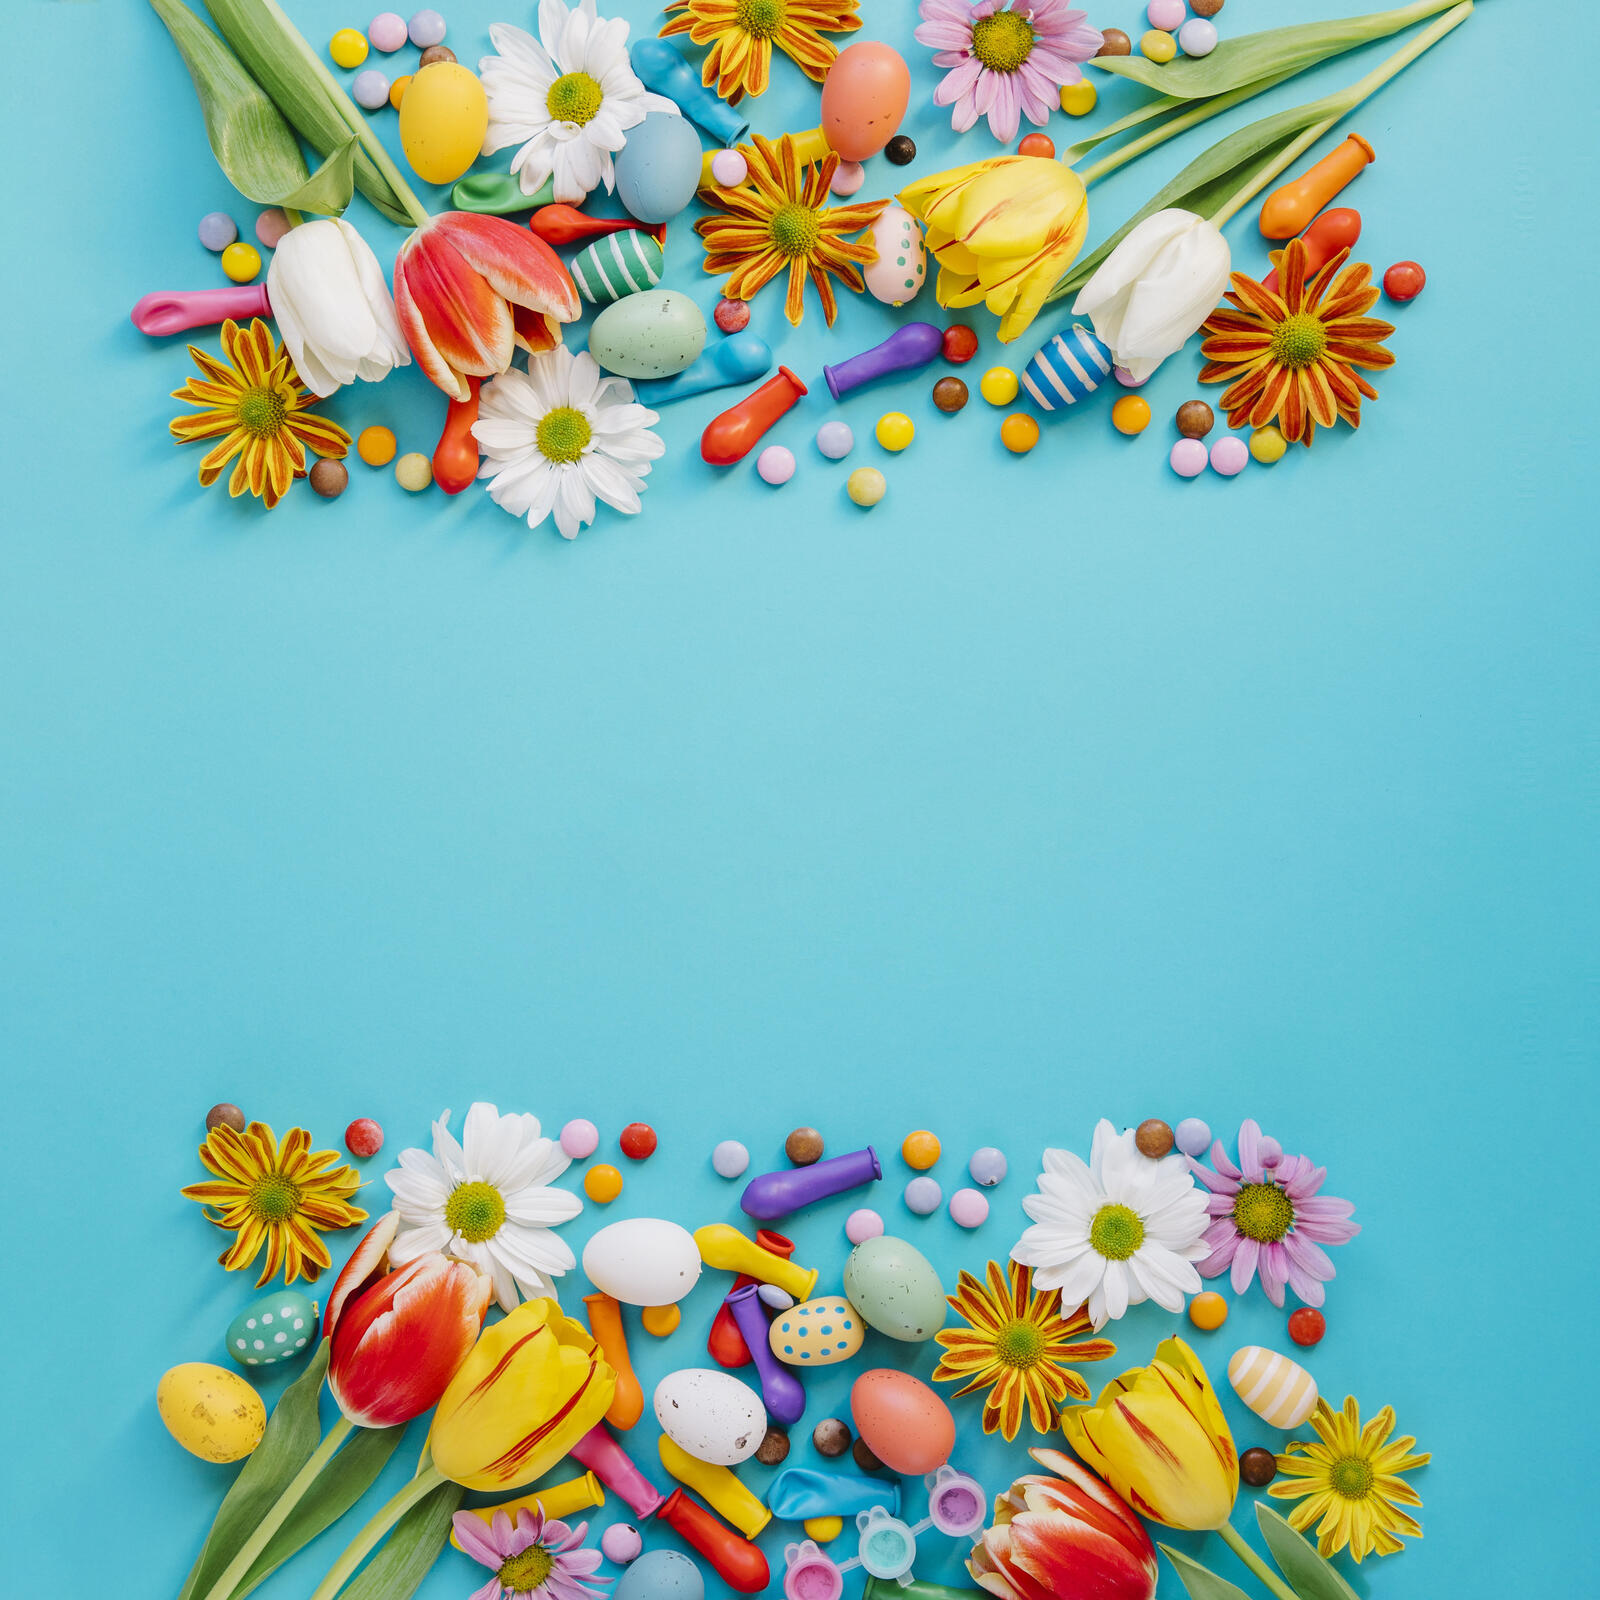 Wallpapers verily risen Easter Easter eggs on the desktop